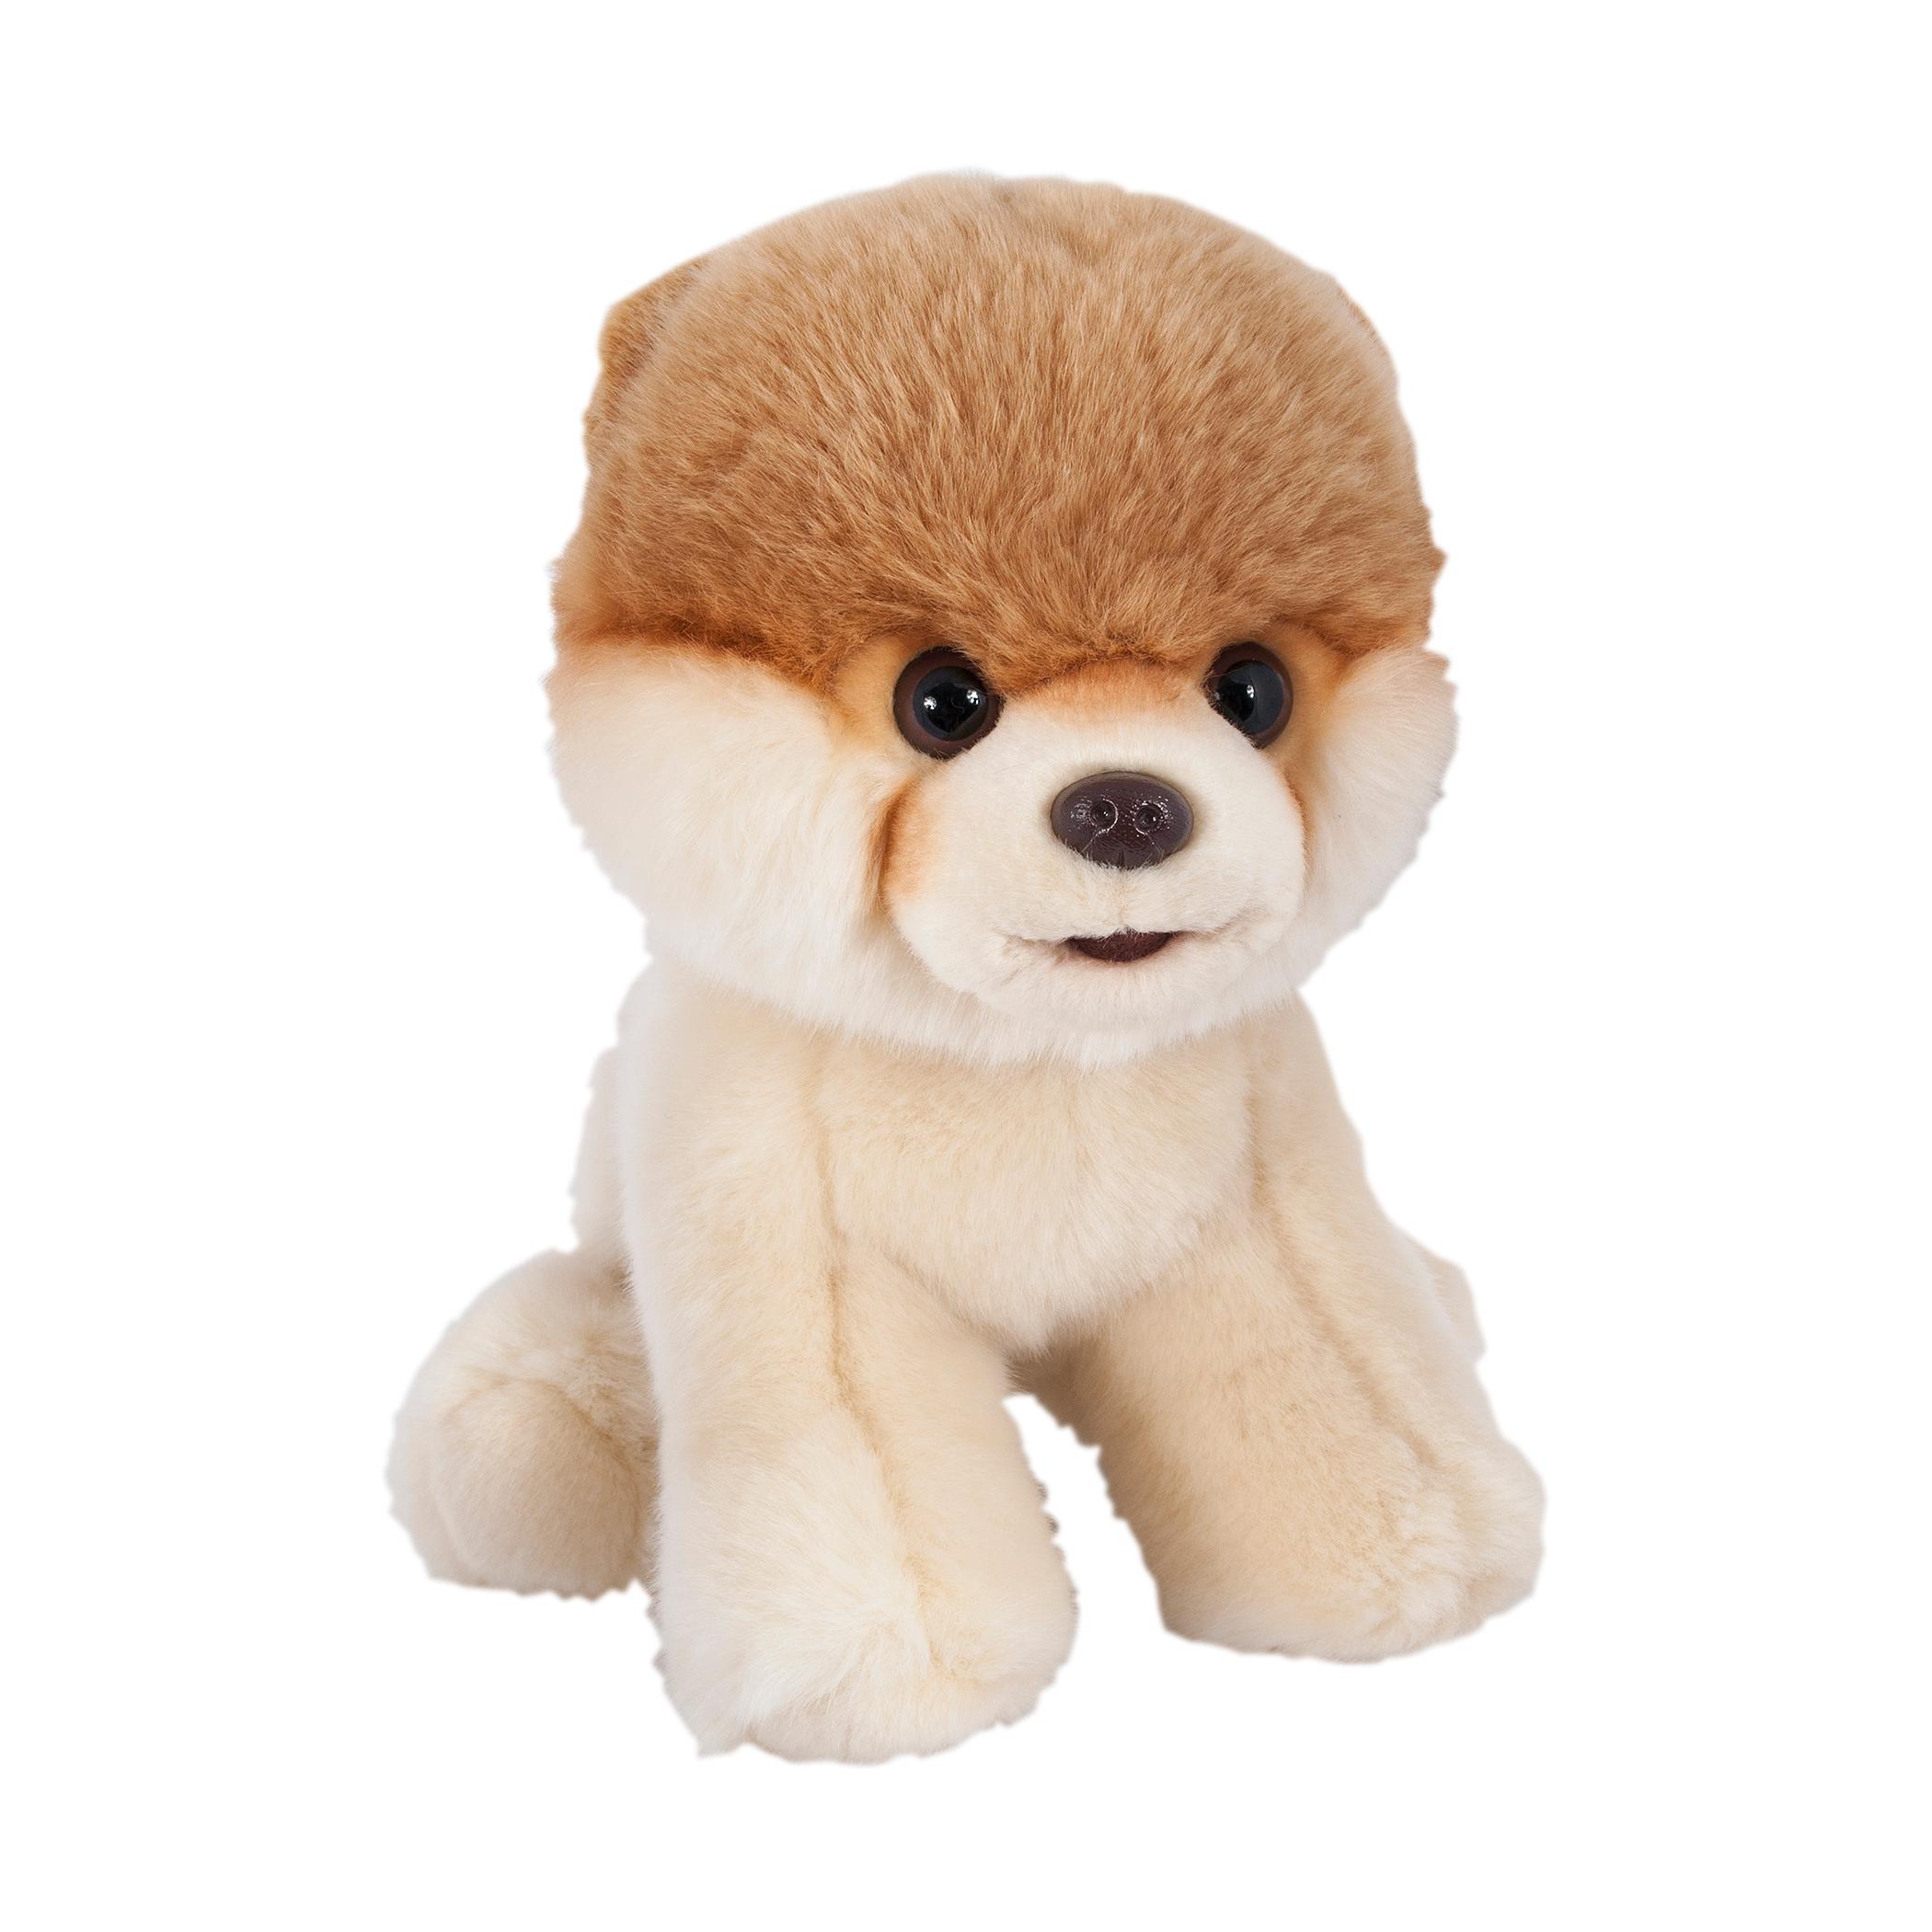 boo the world's cutest dog plush